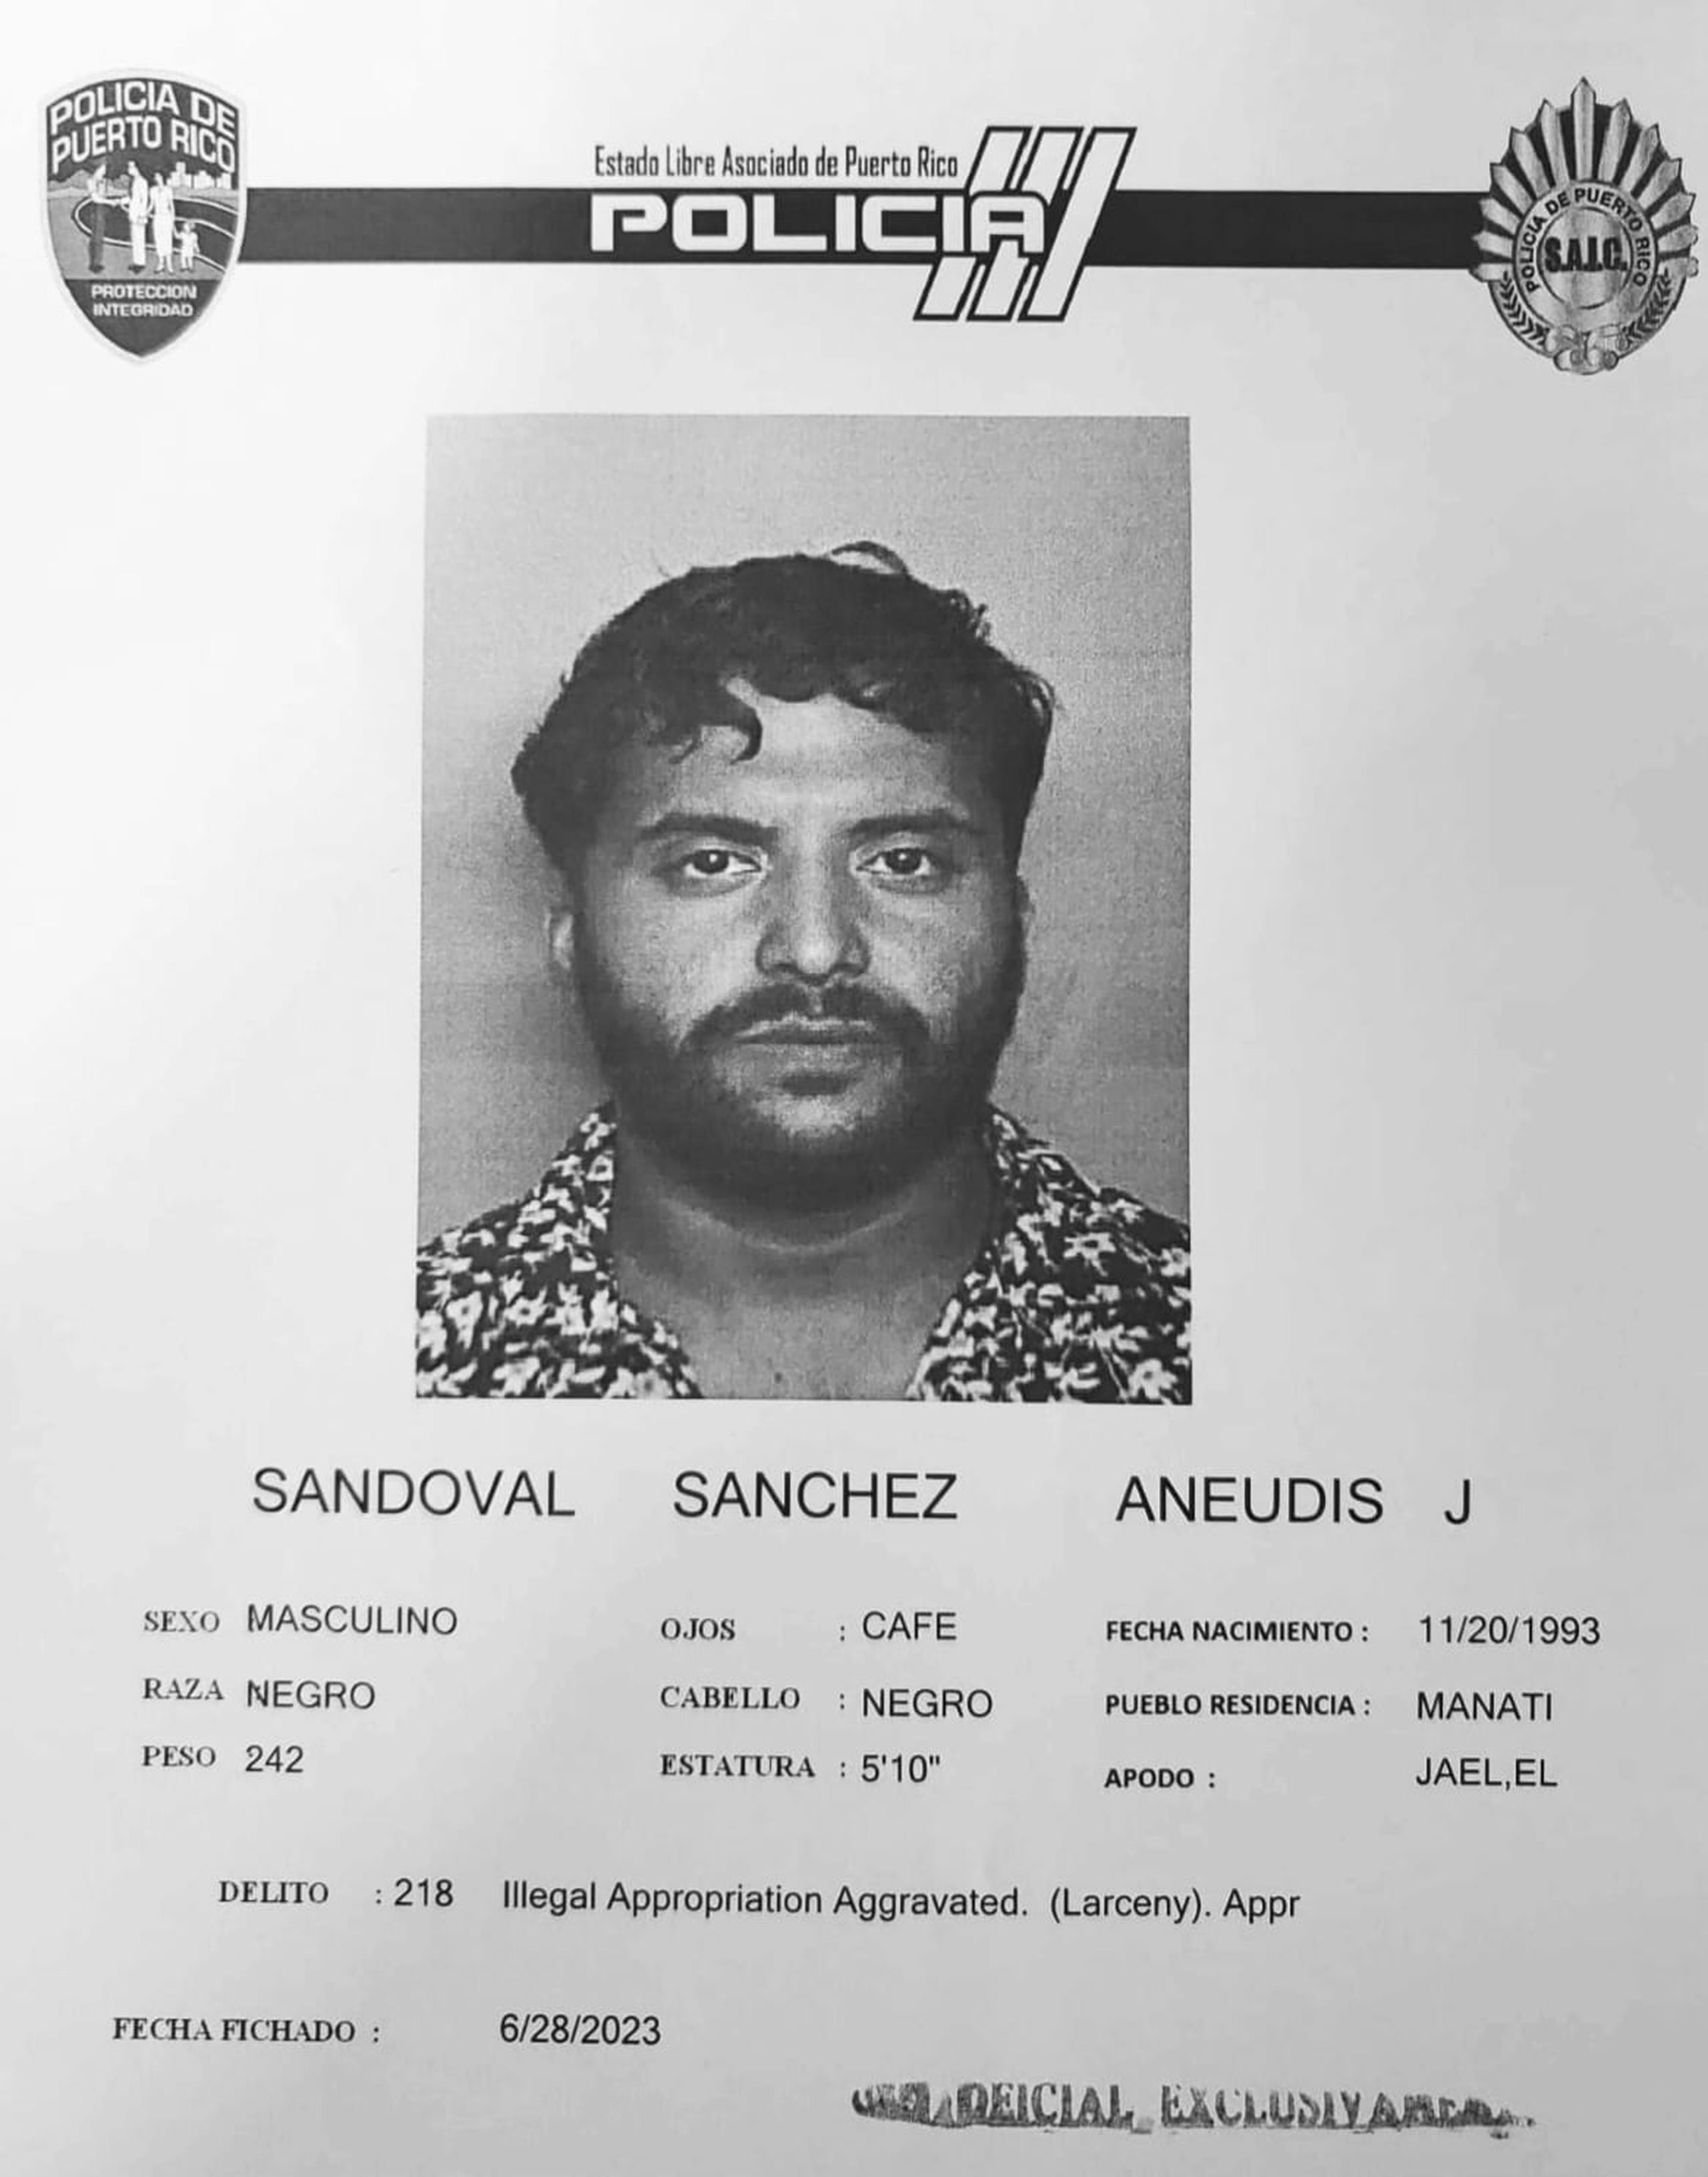 Aneudis J. Sandoval Sánchez está acusado por fraude y apropiación ilegal de fondos públicos.